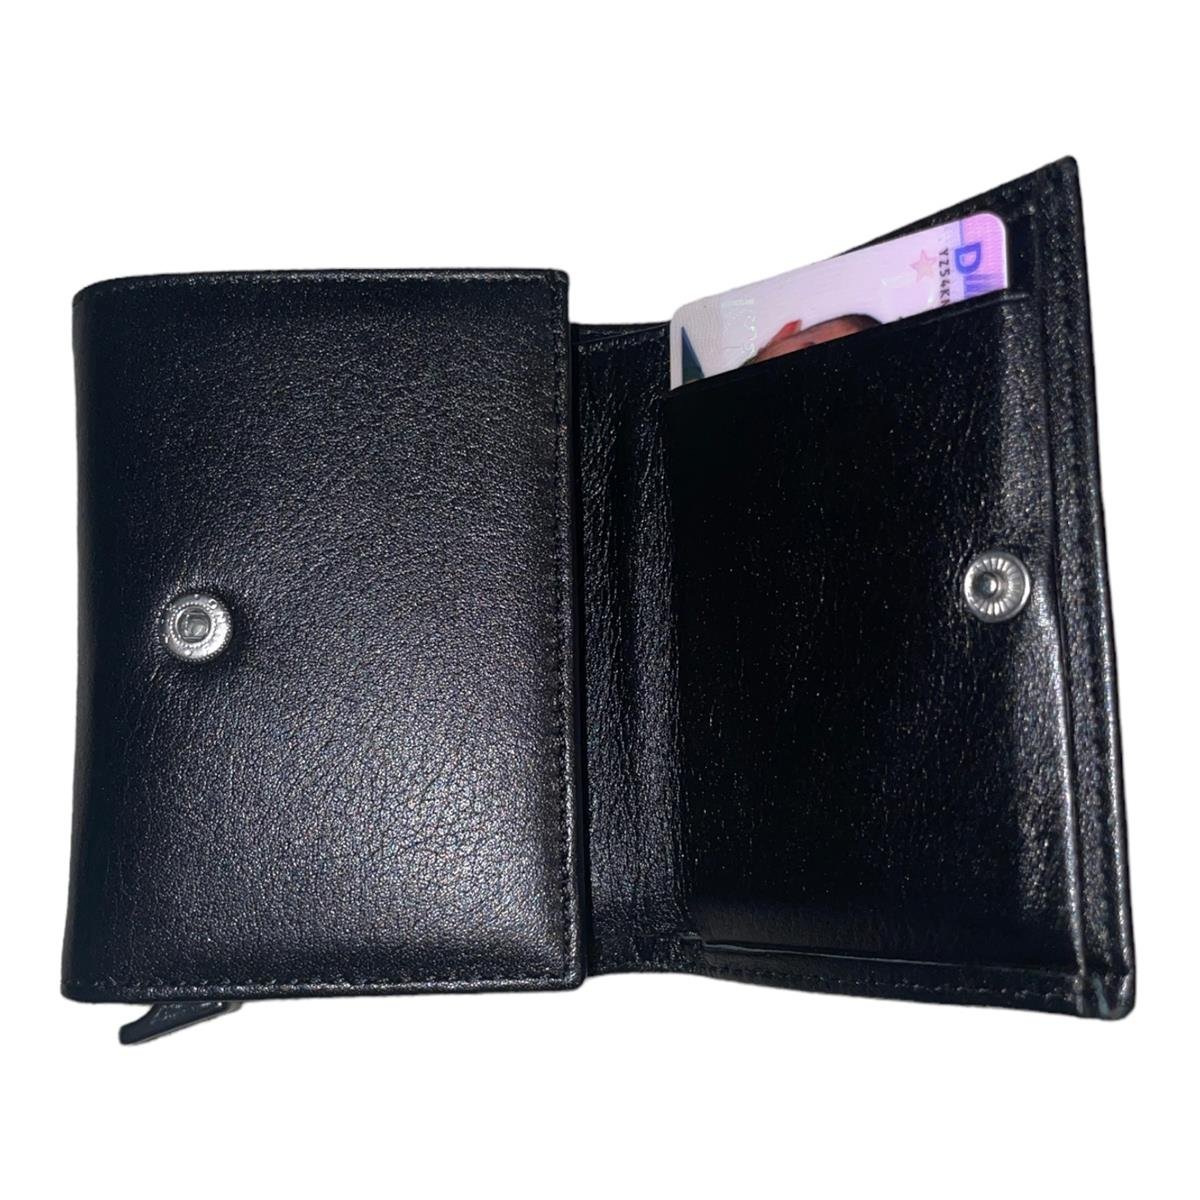 Portmonee-Geldbeutel-Wallet-Qualit-t-Leder-Schwarz-Kreditkartenf-cher-Geldscheinfach-03